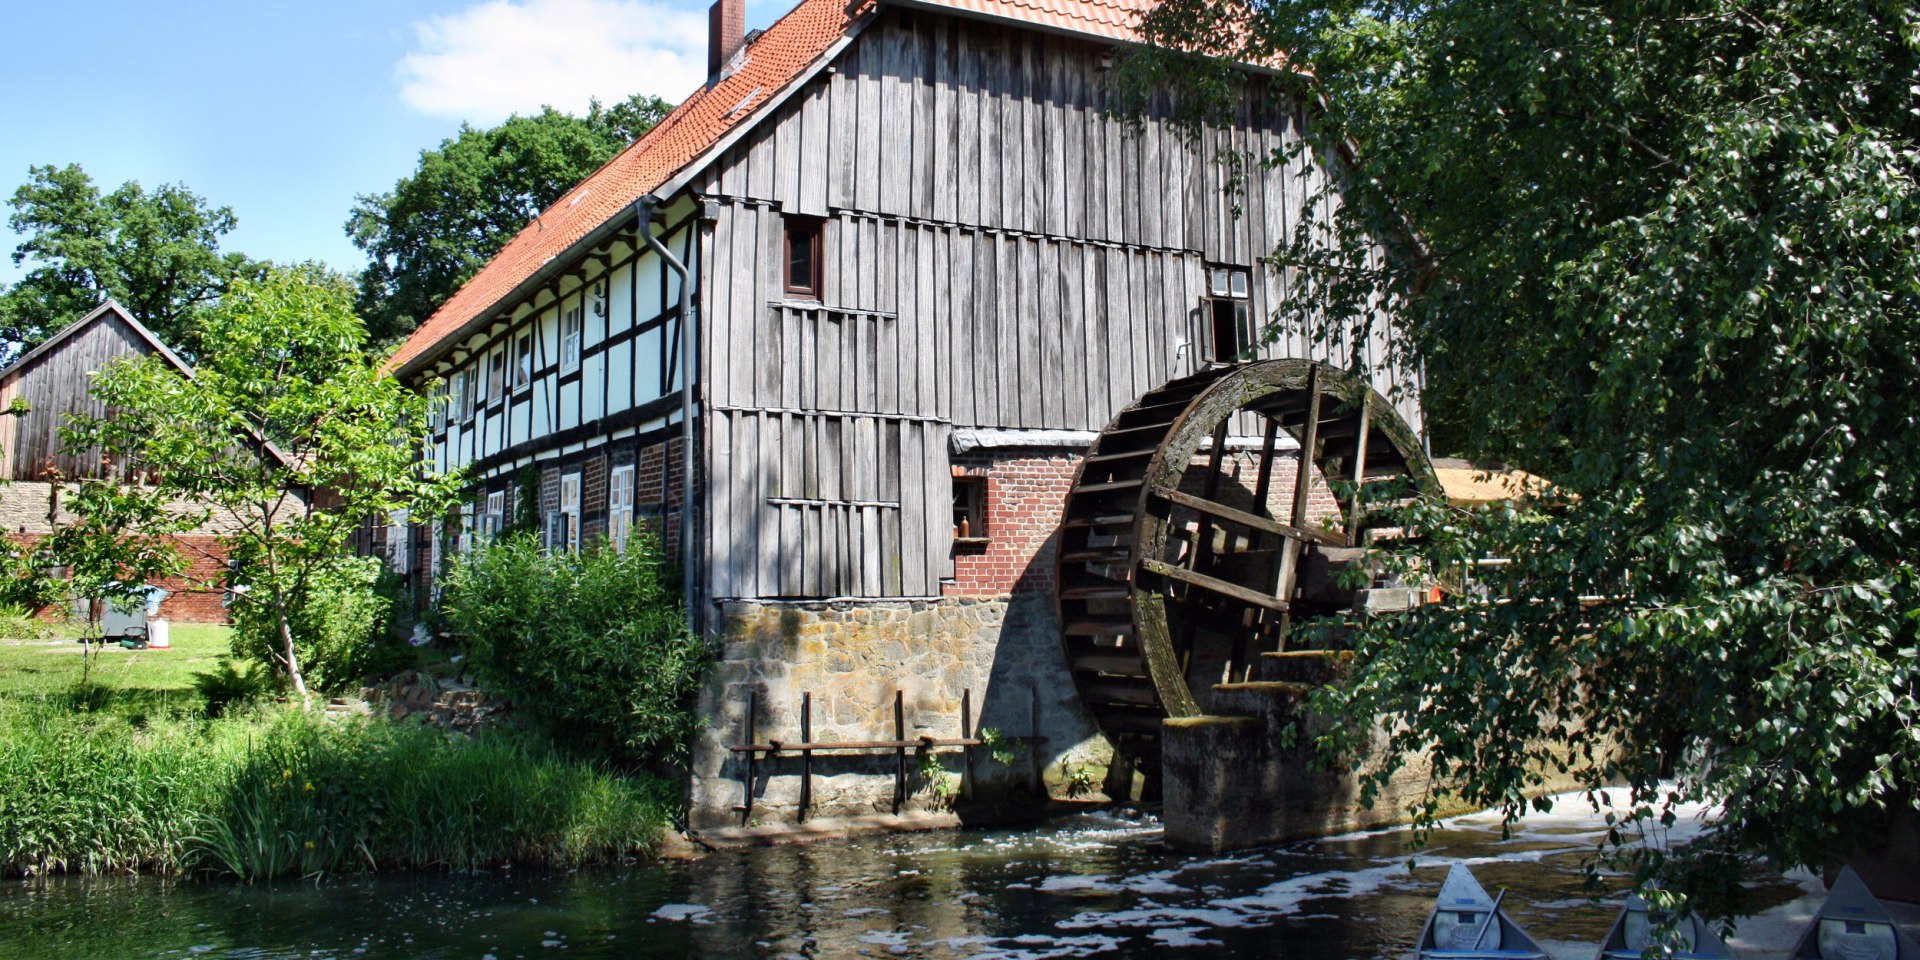 Eltzer mill at the Fuhse, © Dieter Goldmann / pixelio